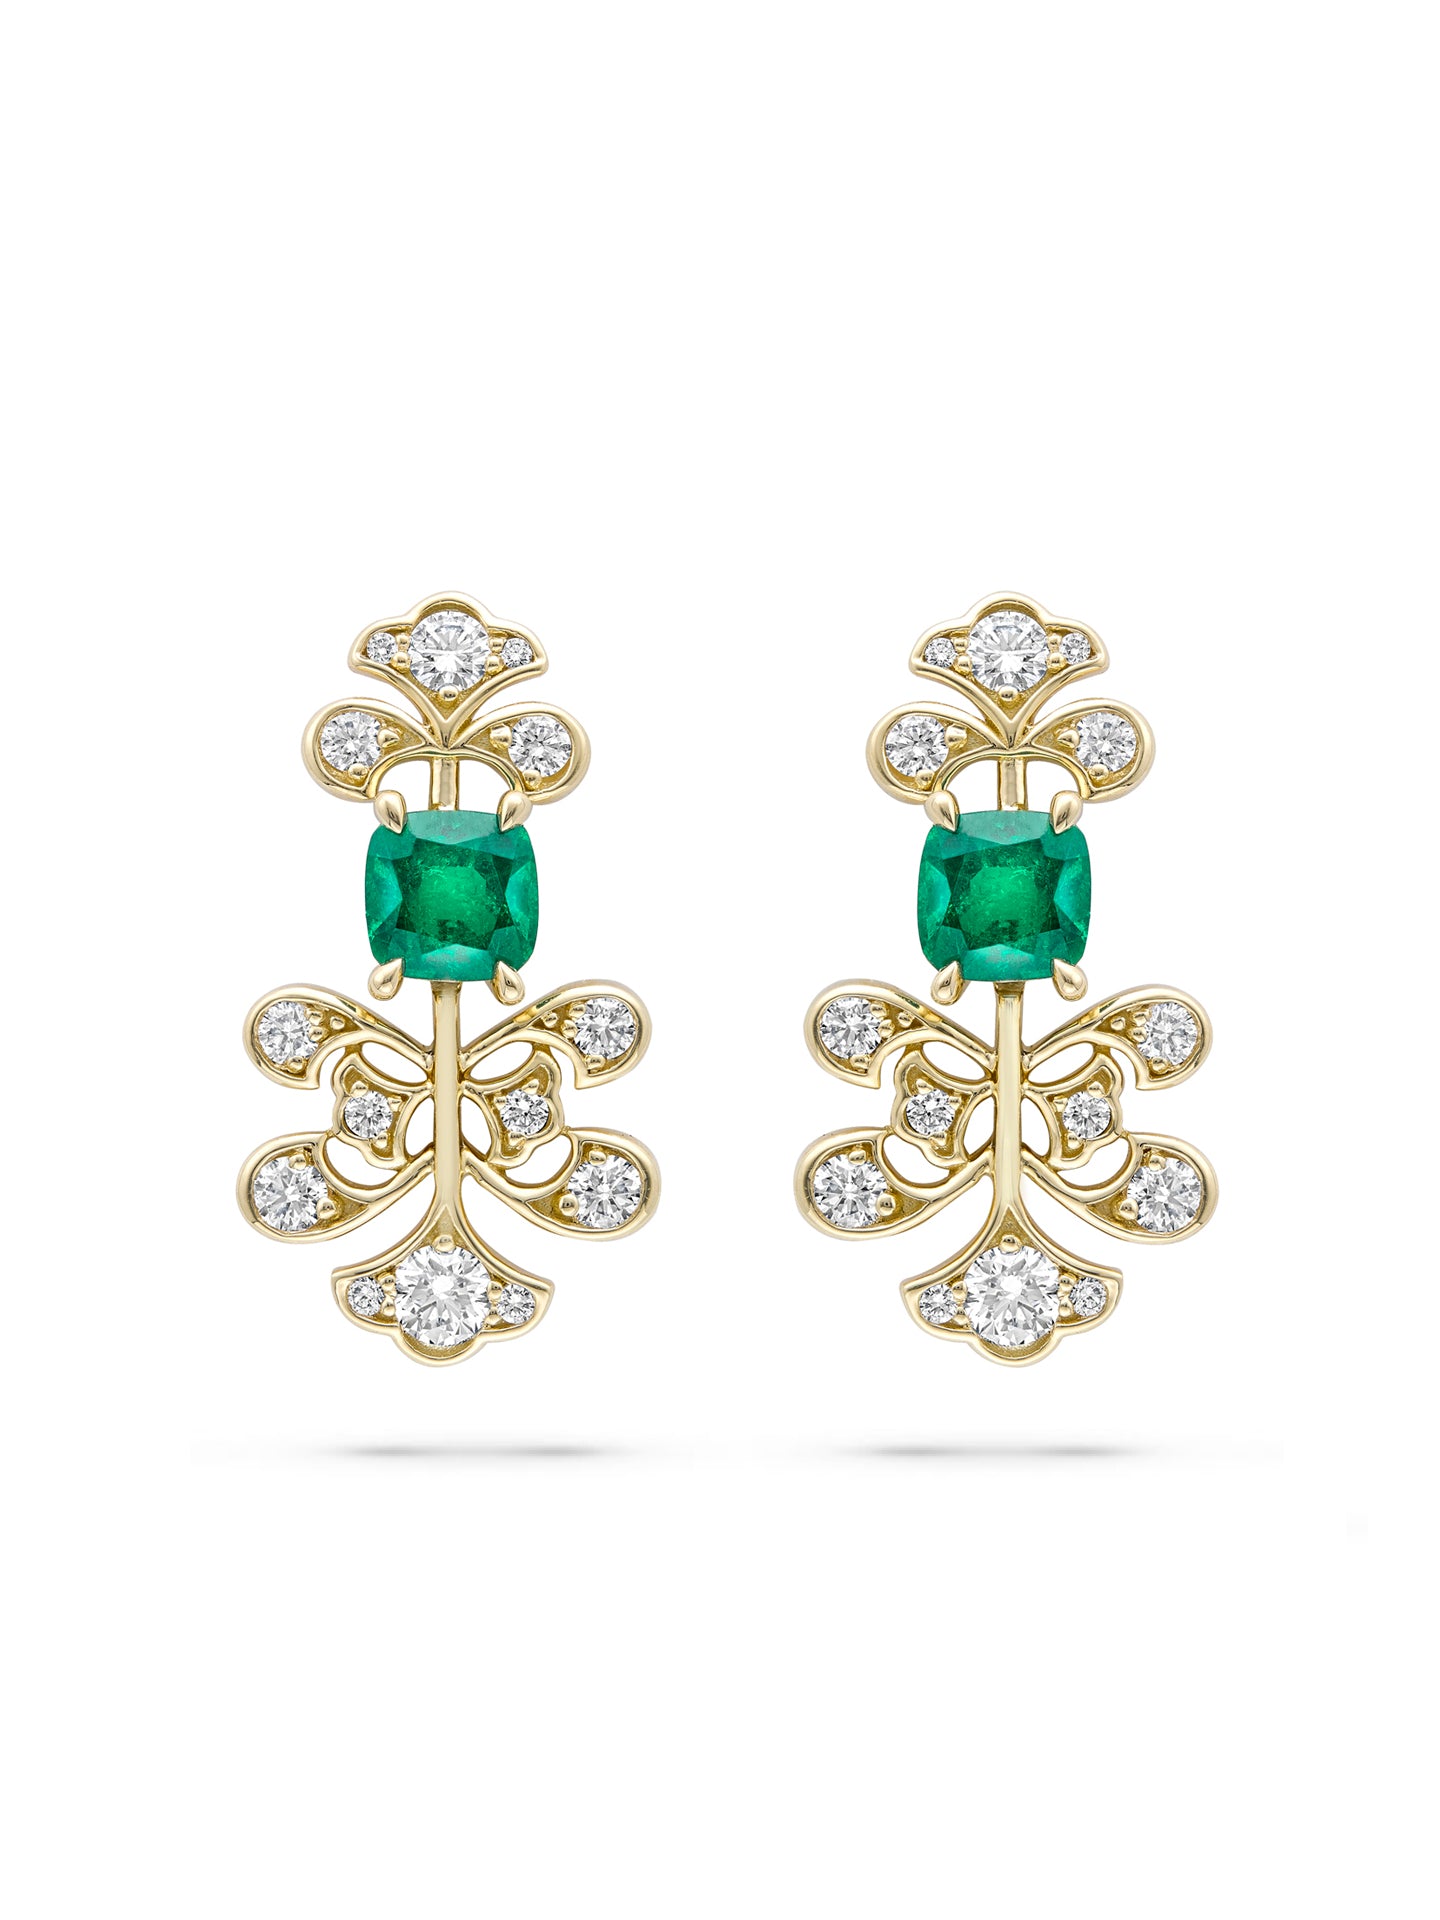 Secret Garden Fern Emerald Diamond Yellow Gold Earrings | Boodles